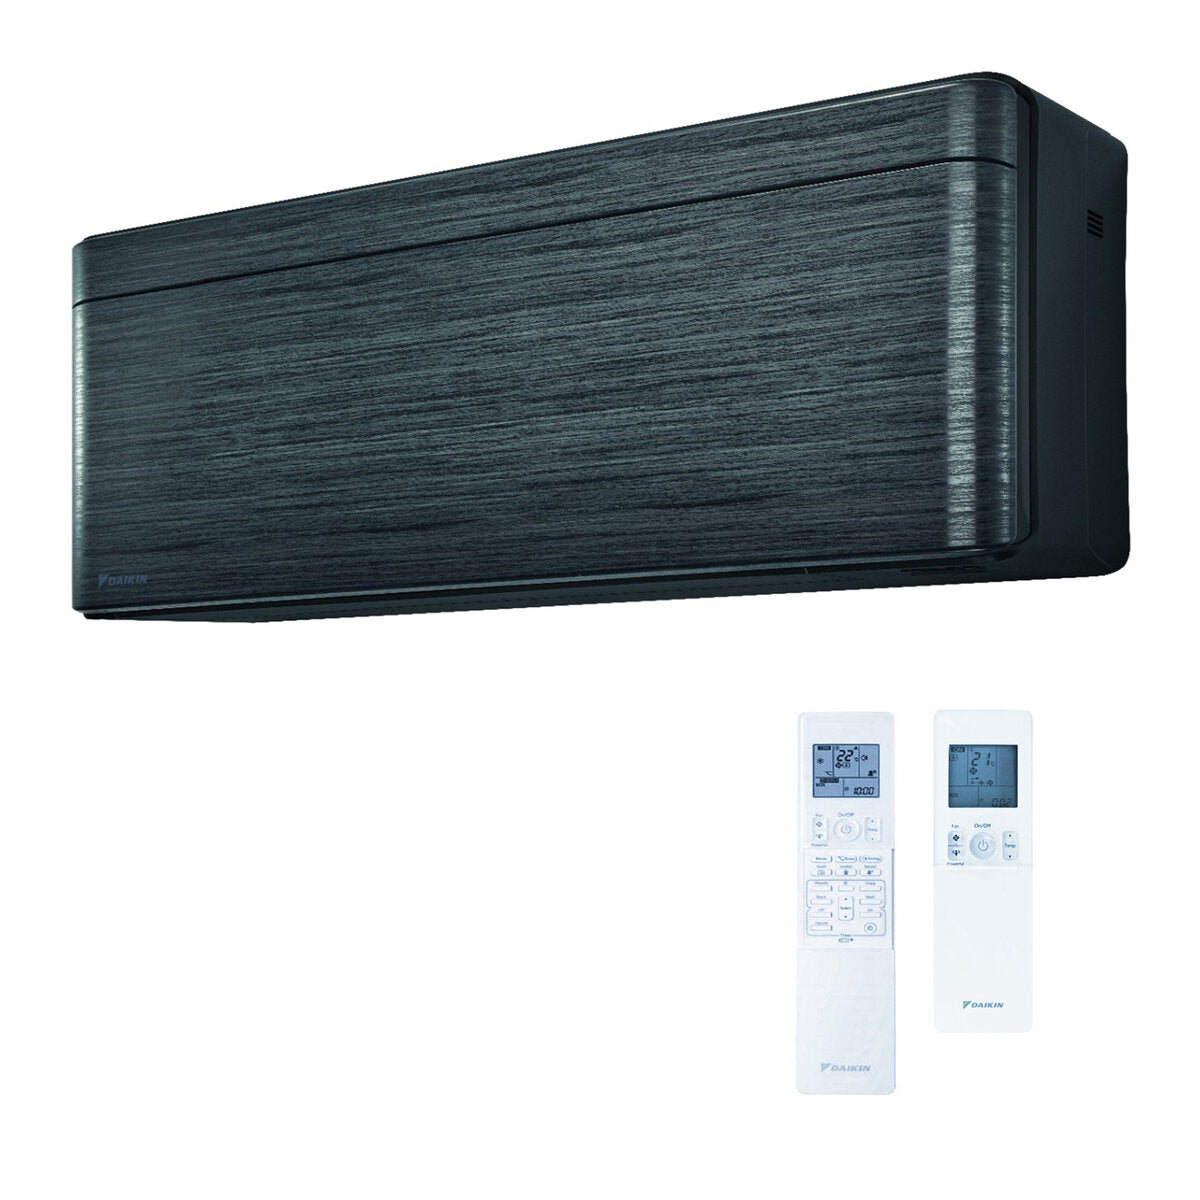 Daikin Stylish air conditioner penta split 9000 + 9000 + 9000 + 9000 + 12000 BTU inverter A ++ wifi outdoor unit 9.0 kW